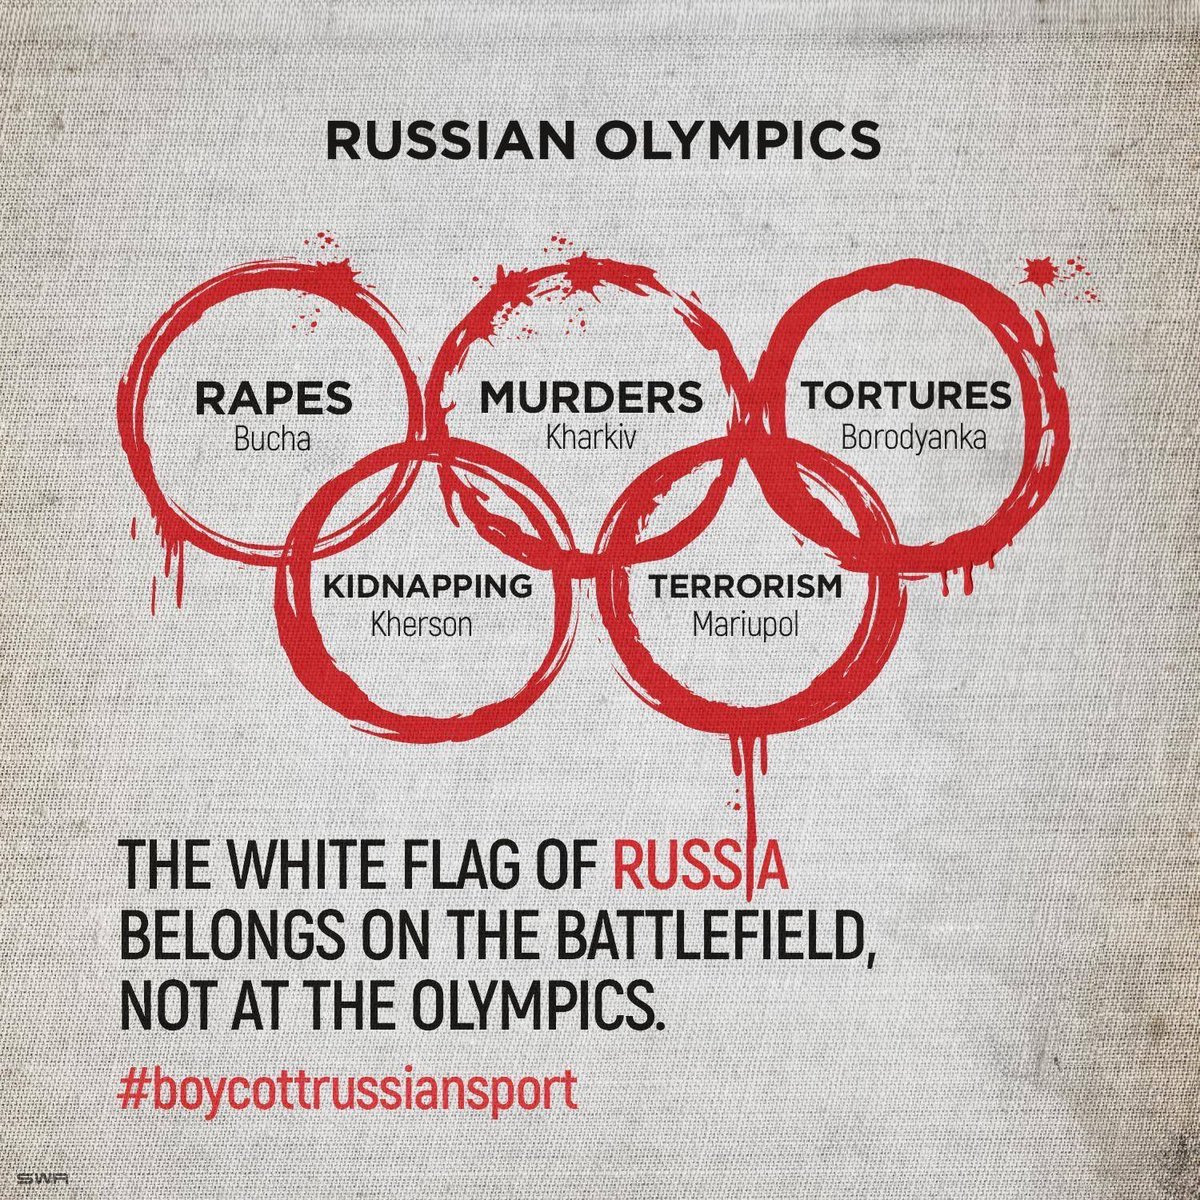 #boycott #RussiaIsATerroristState